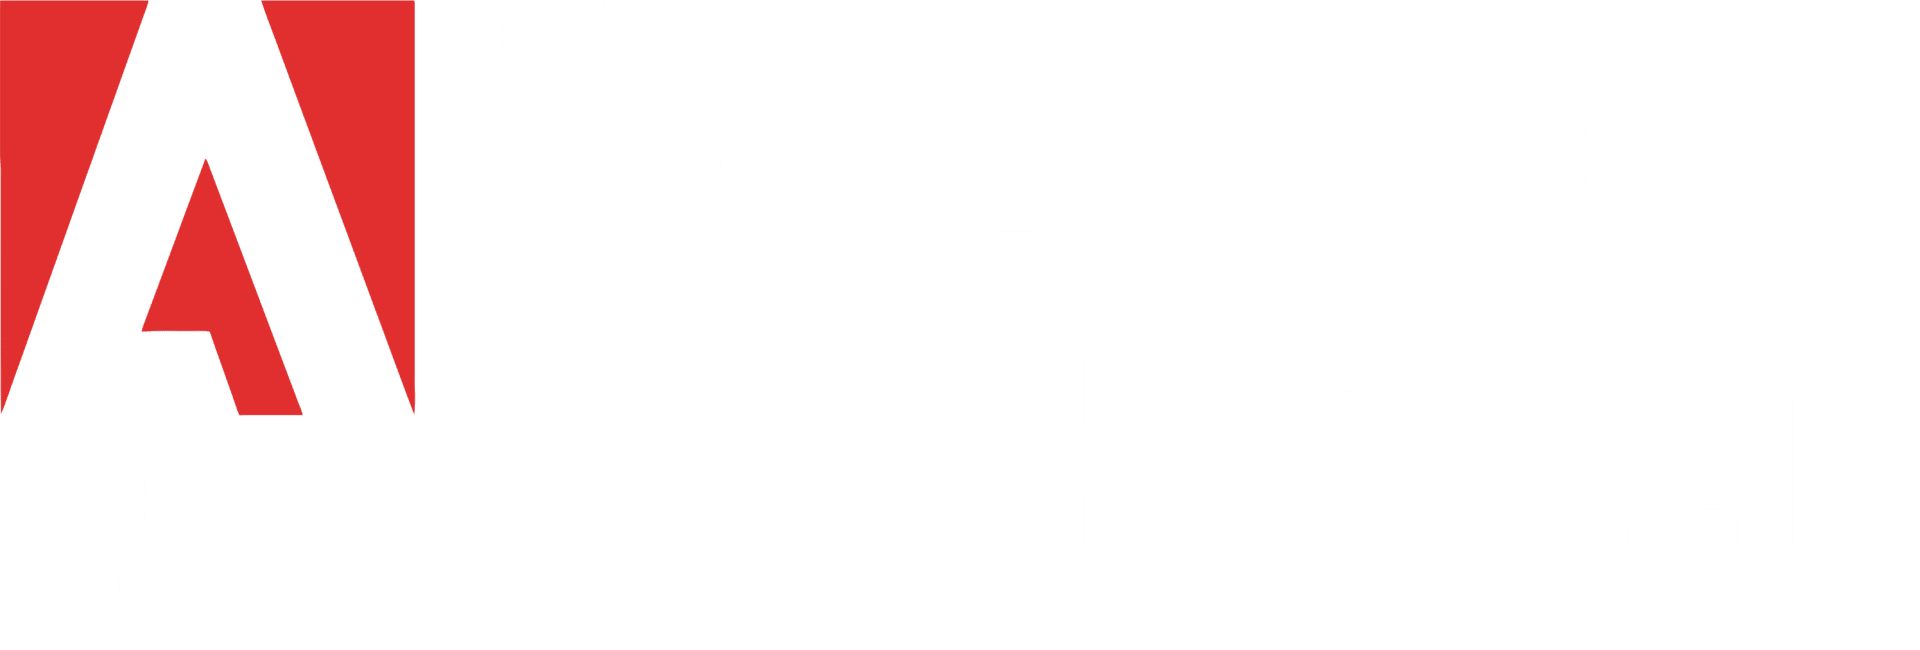 Rd Adobe Solutions Partner3